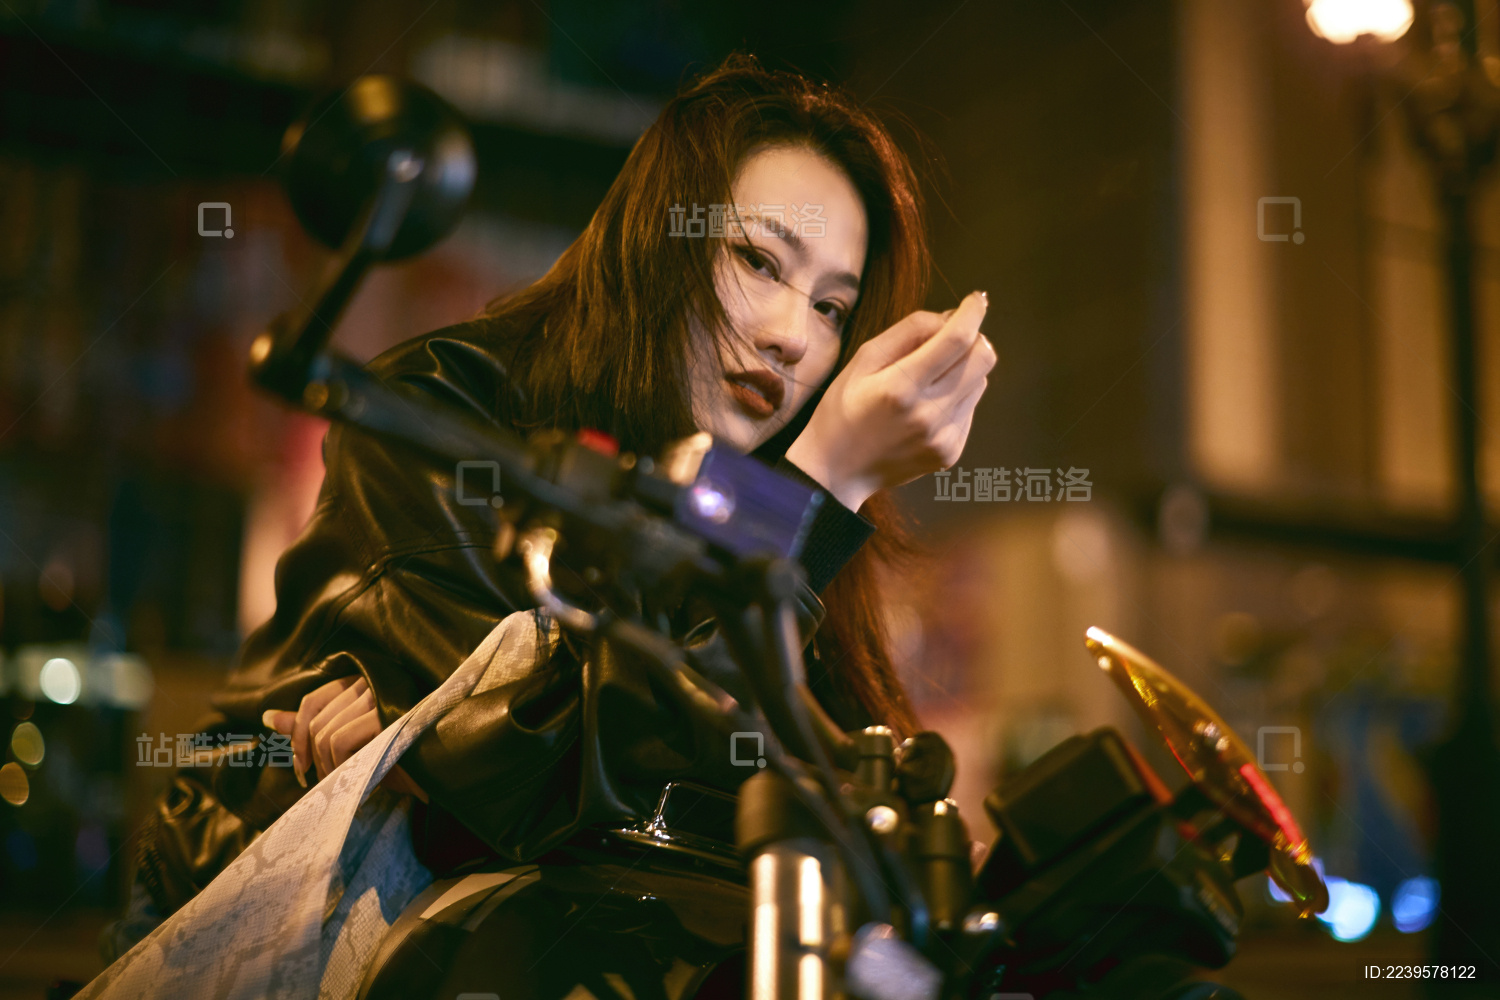 图片素材 : 晚, 自行车, 车辆, 摩托车 5472x3648 - - 1402197 - 素材中国, 高清壁纸 - PxHere摄影图库